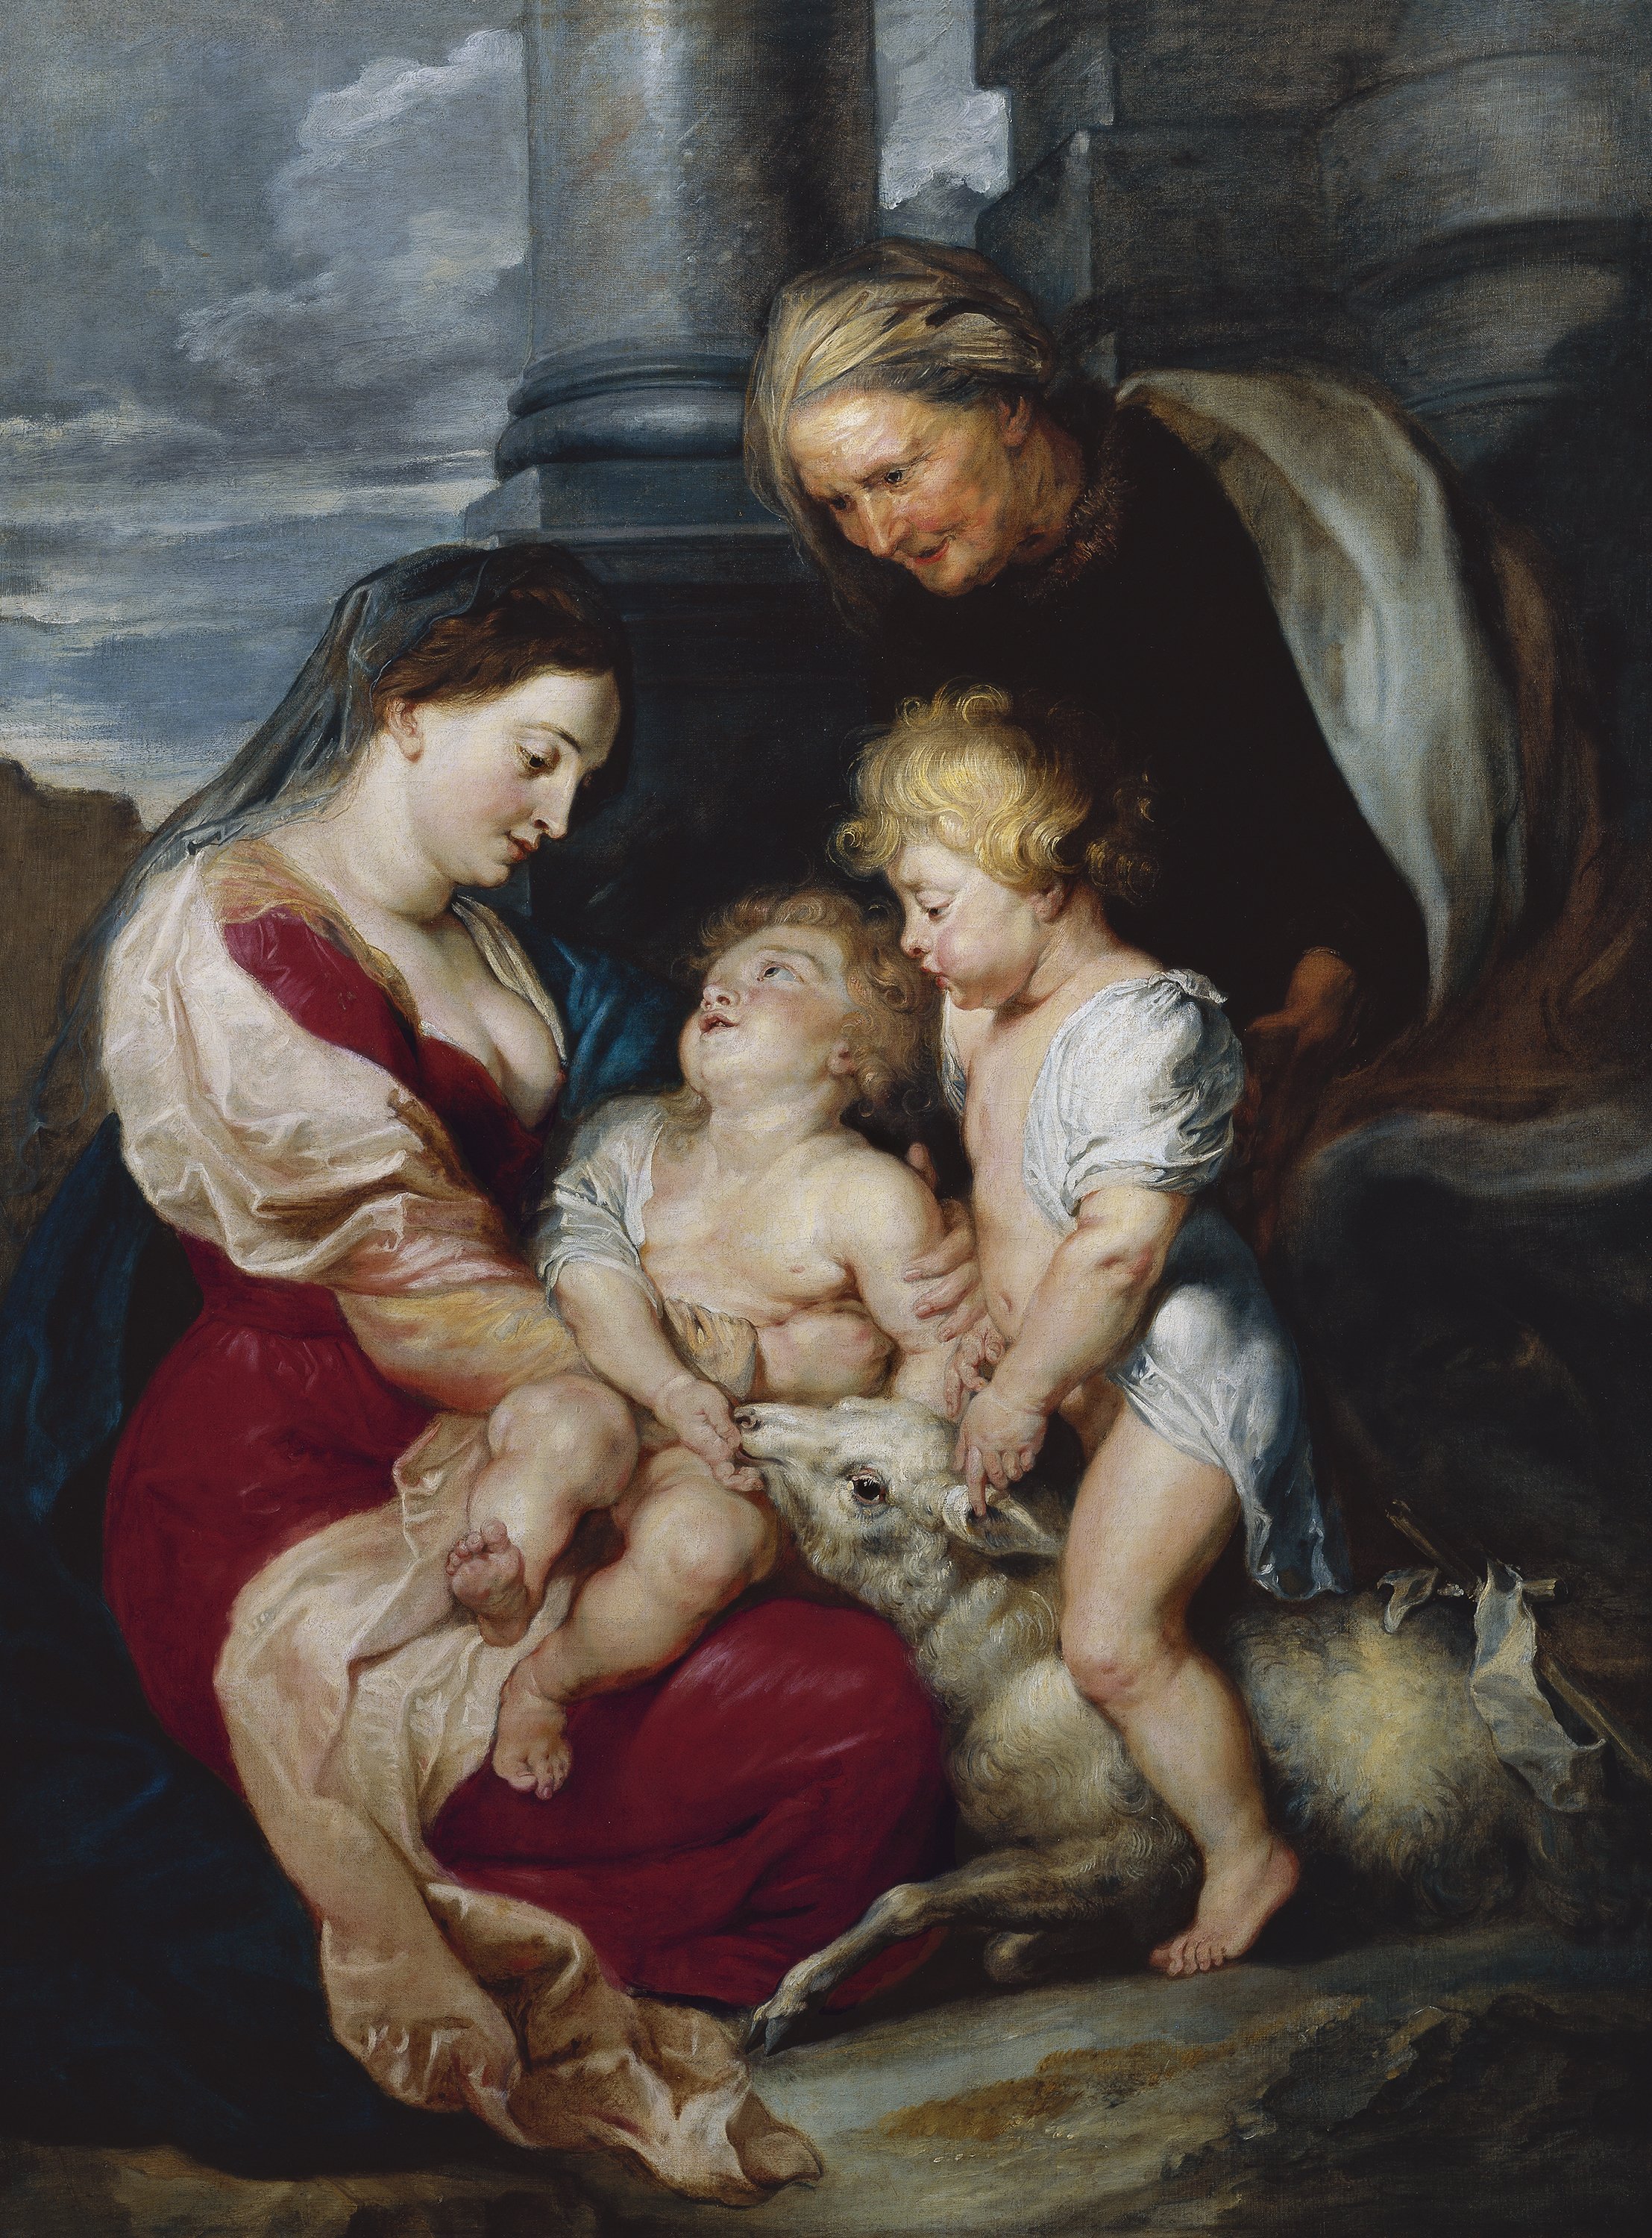 The Virgin and Child with St. Elizabeth and St. John the Baptist. La Virgen con el Niño, santa Isabel y san Juan Bautista, c. 1618